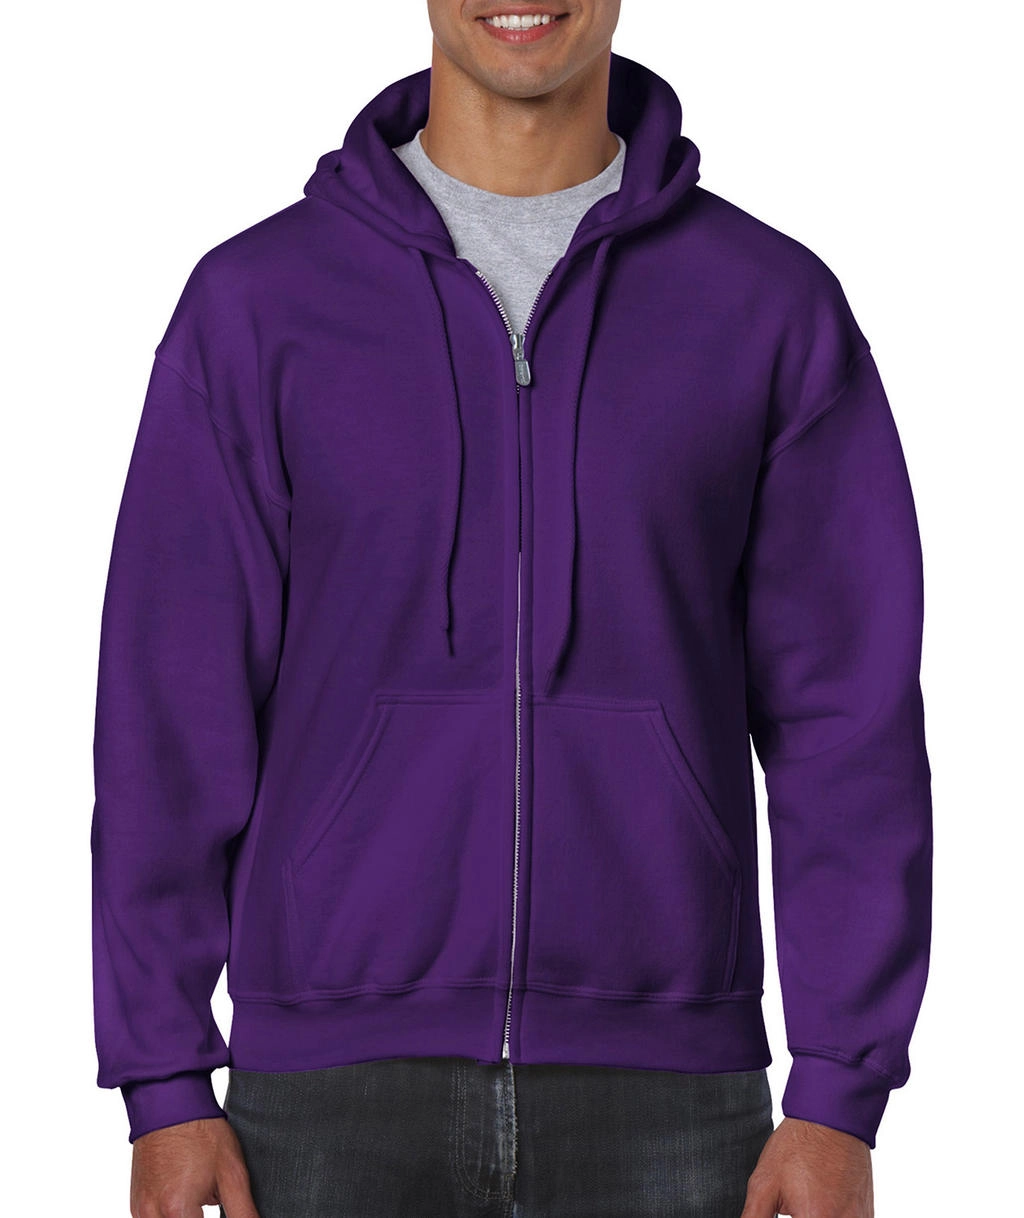 Heavy Blend Adult Full Zip Hooded Sweat zum Besticken und Bedrucken in der Farbe Purple mit Ihren Logo, Schriftzug oder Motiv.